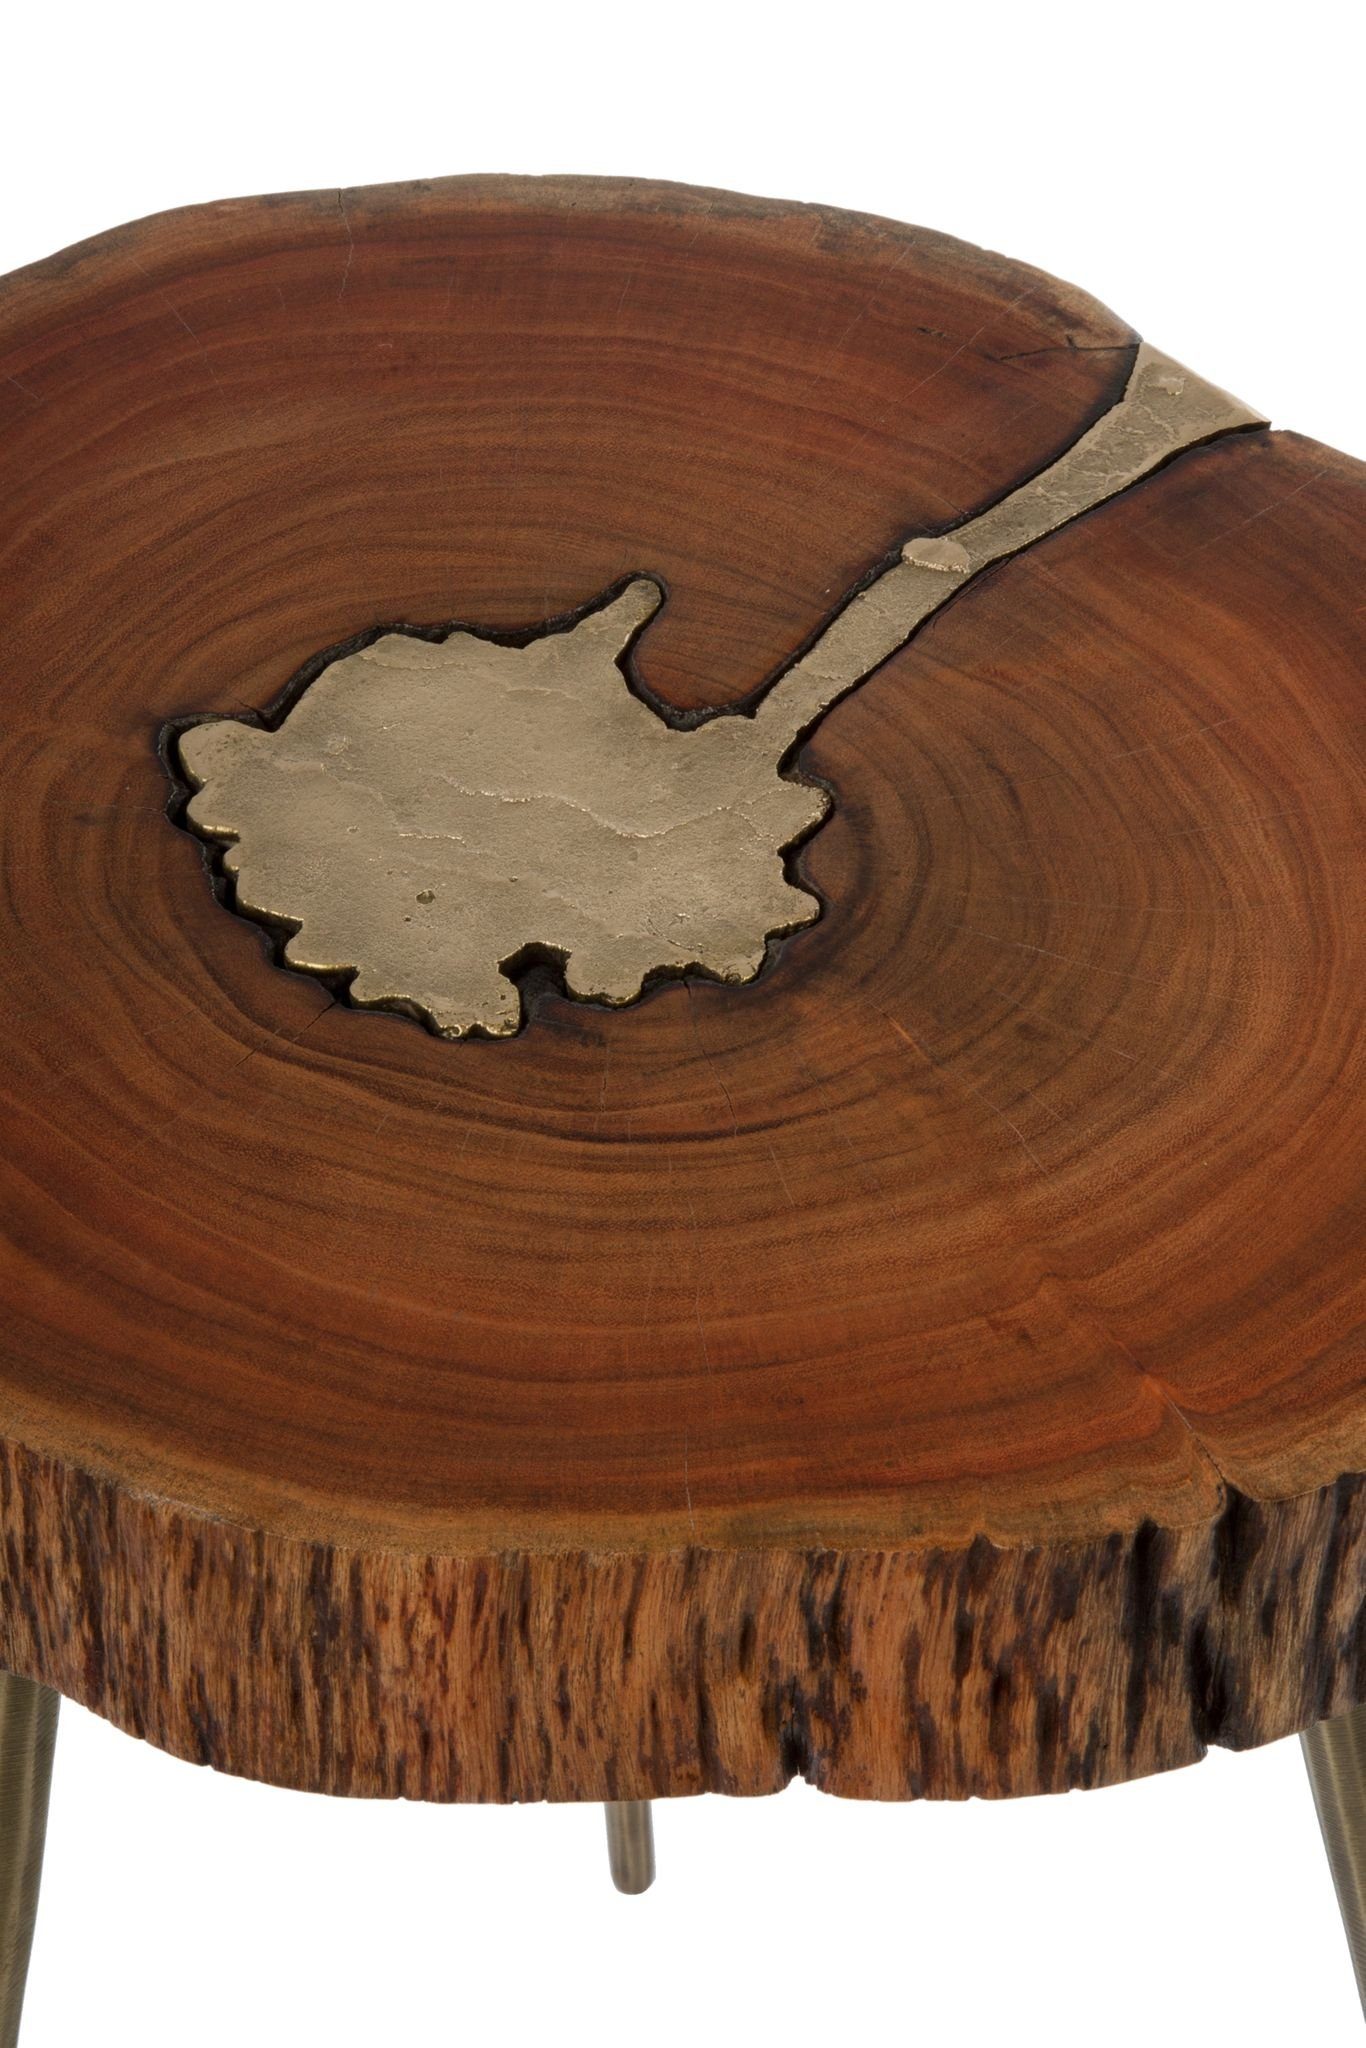 Holz Couchtisch Ablage: elbmöbel mit rustikal Messingfüllung messing cm 28x46x36 Beistelltisch Beistelltisch (FALSCH),